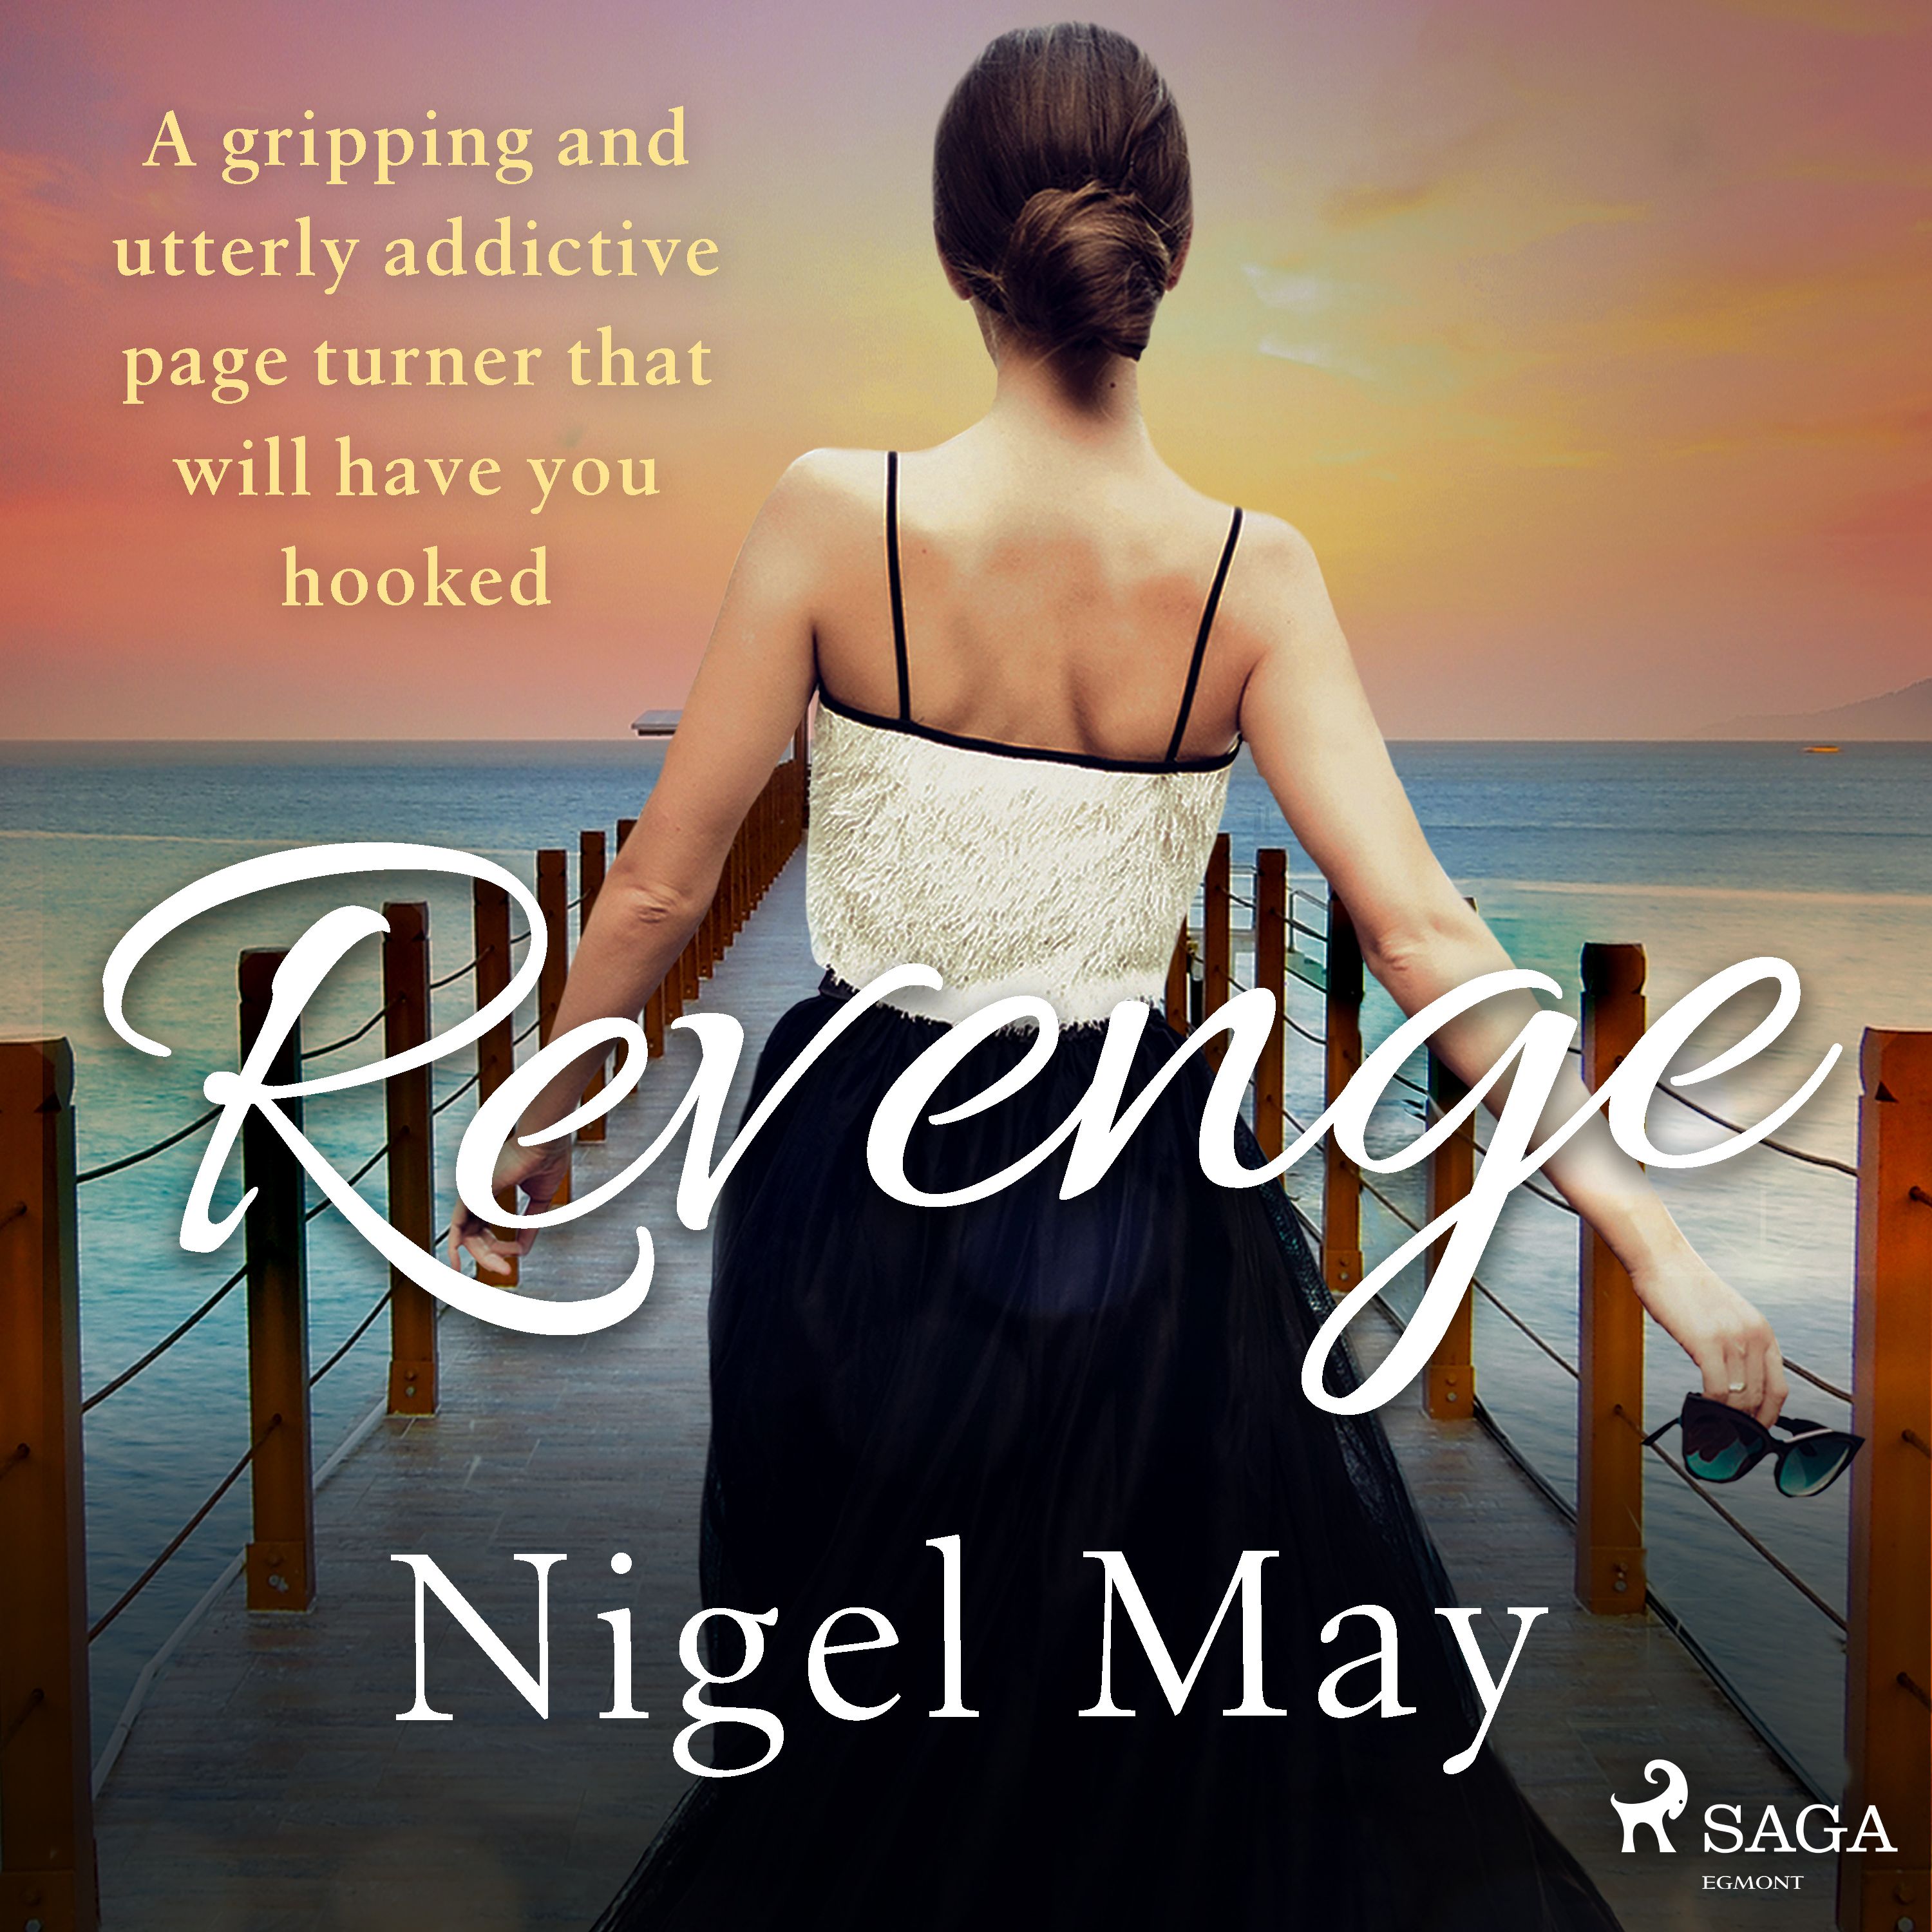 Revenge, ljudbok av Nigel May